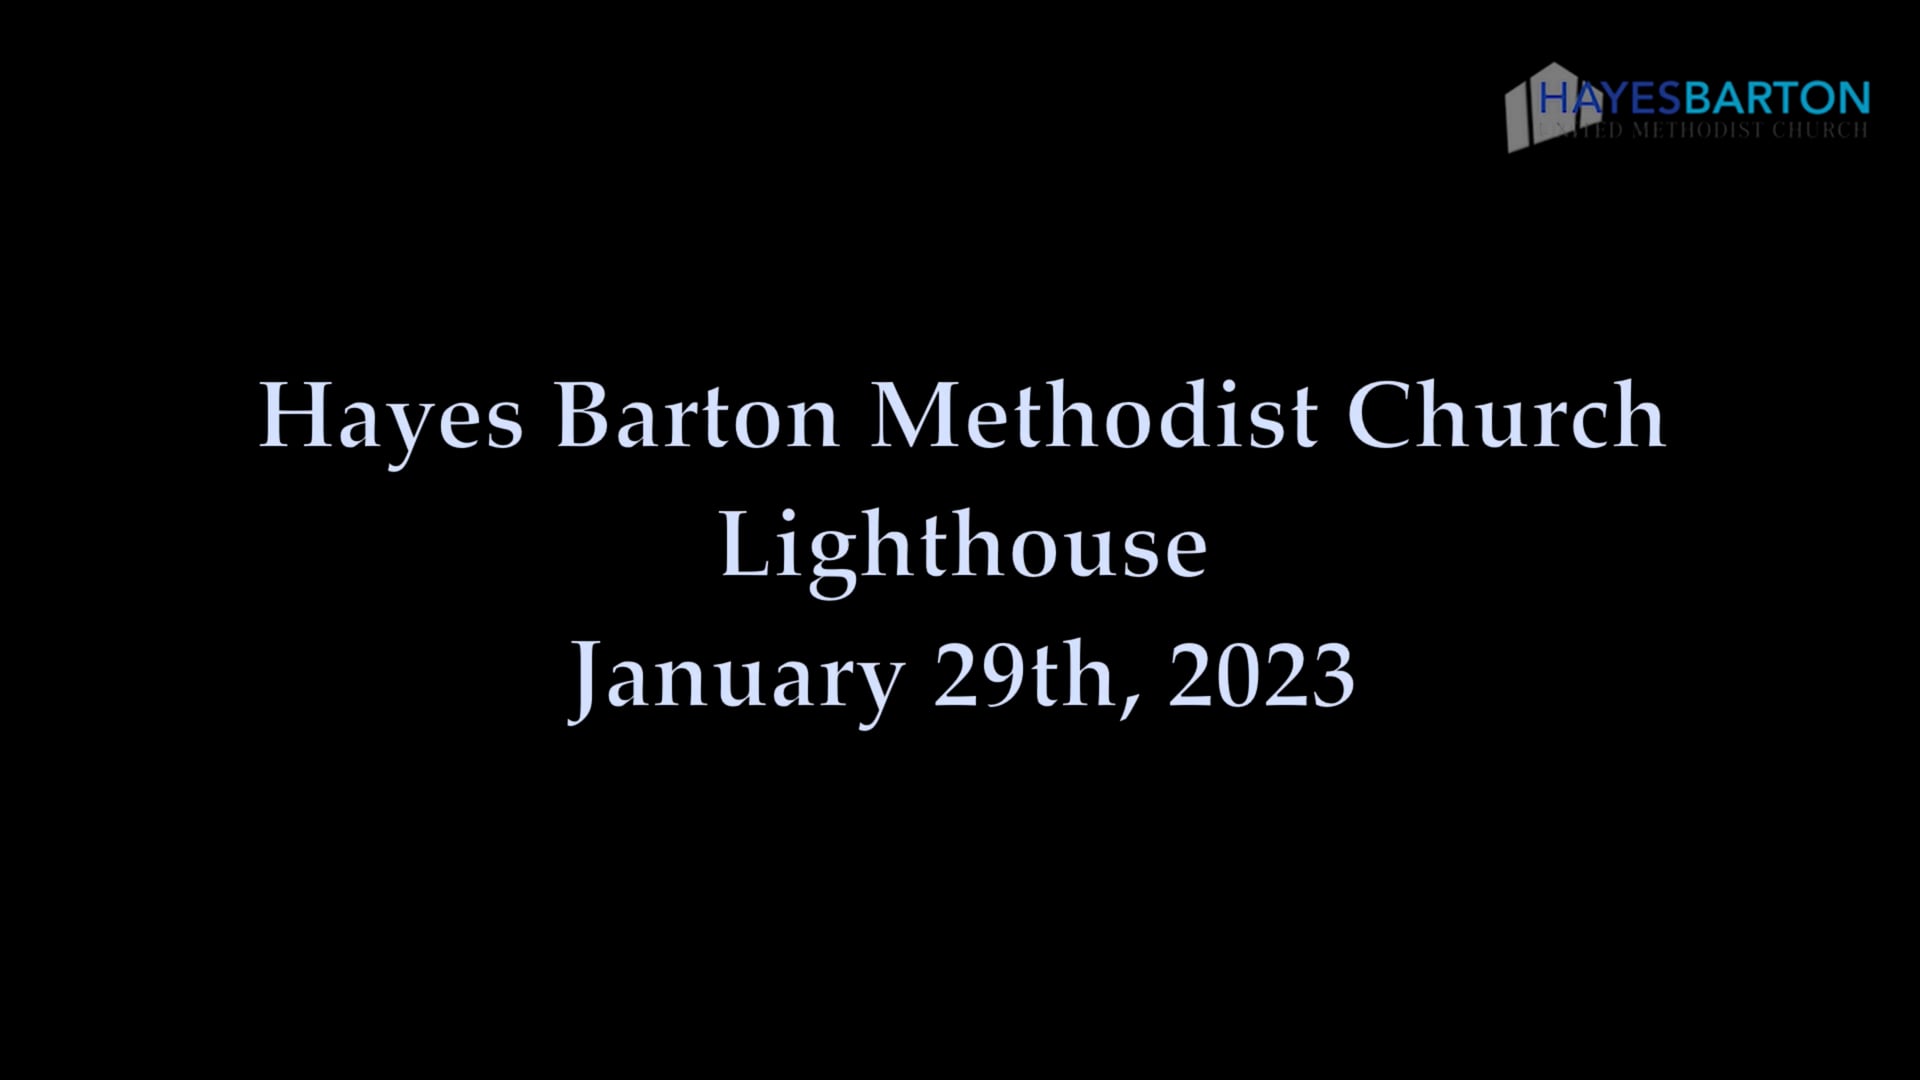 Lighthouse - January 29, 2023